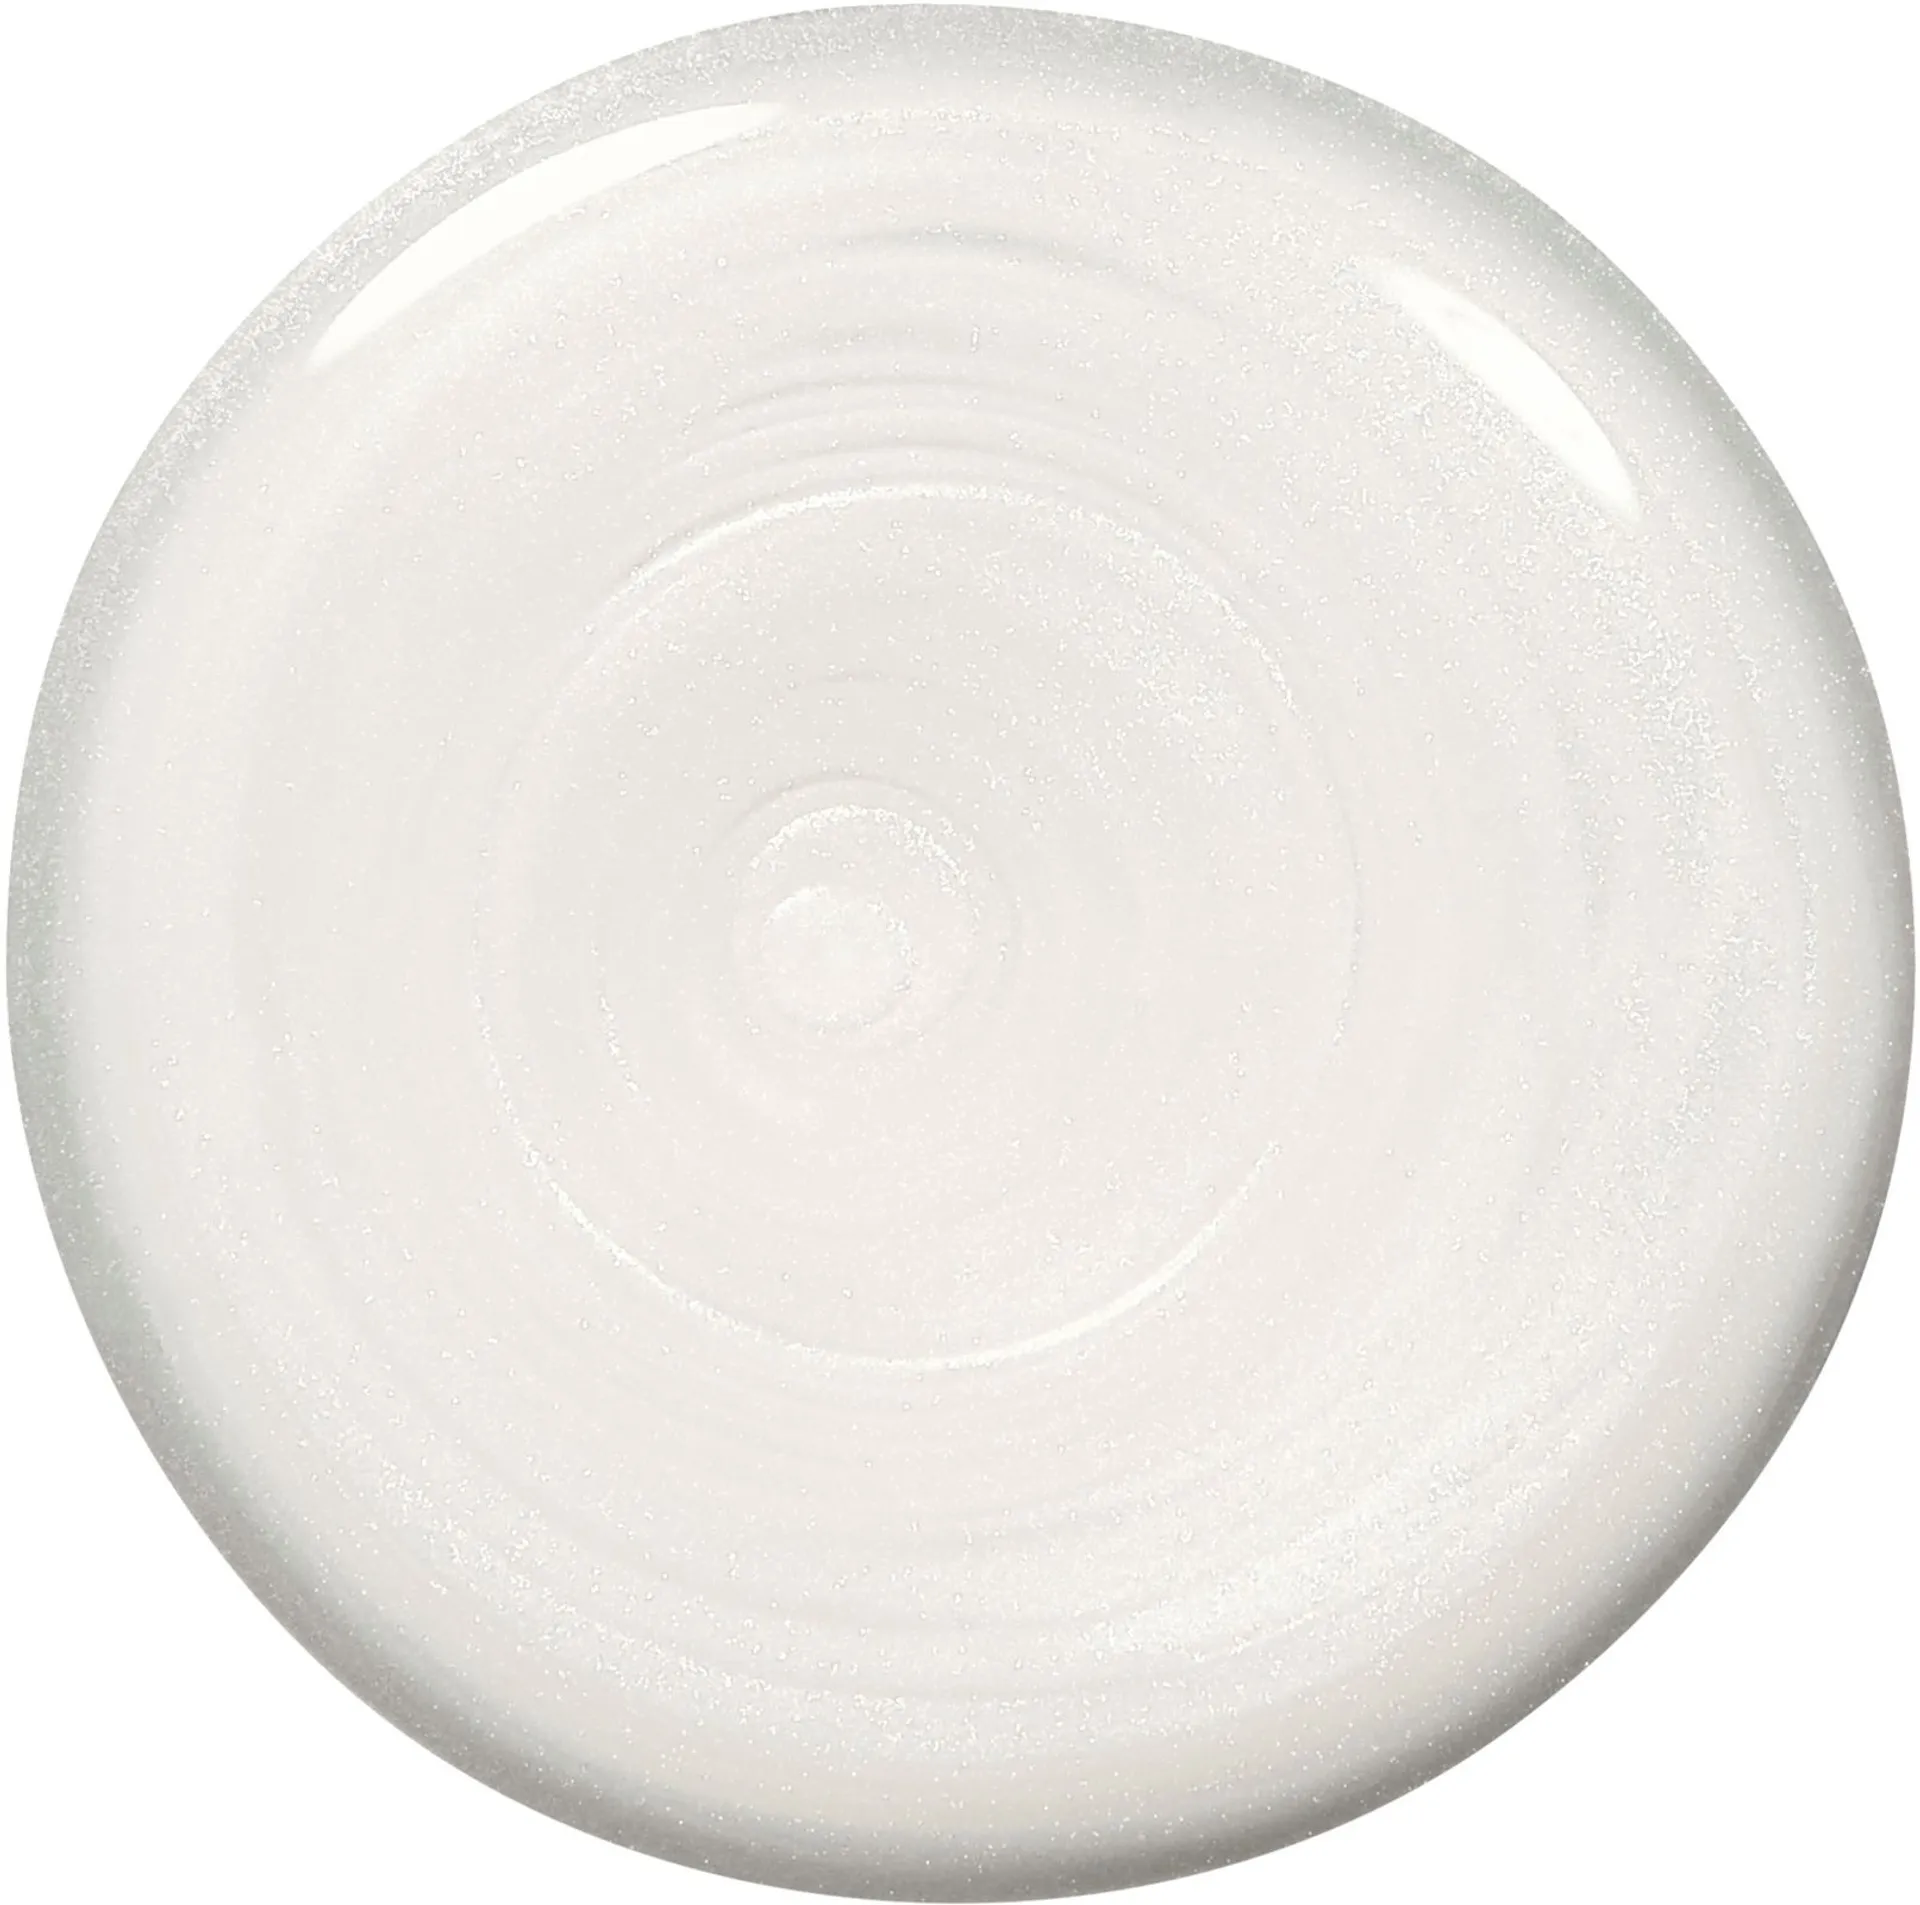 essie Original 4 Pearly White -kynsilakka 13,5ml - 2